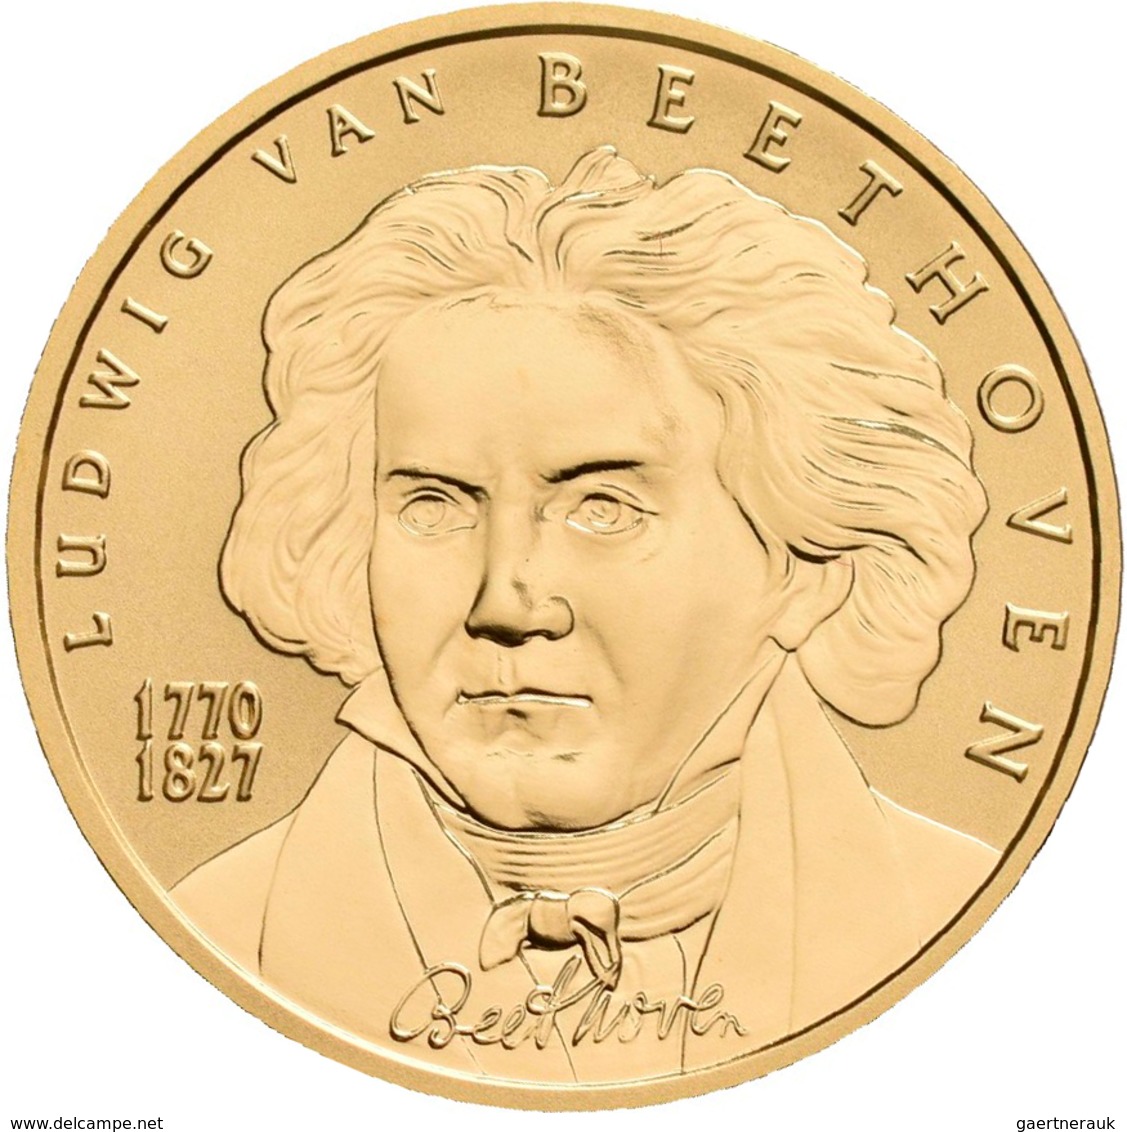 Österreich - Anlagegold: 50 Euro 2005 Grosse Komponisten - Ludwig Van Beethoven. KM# 3118, Friedberg - Oesterreich